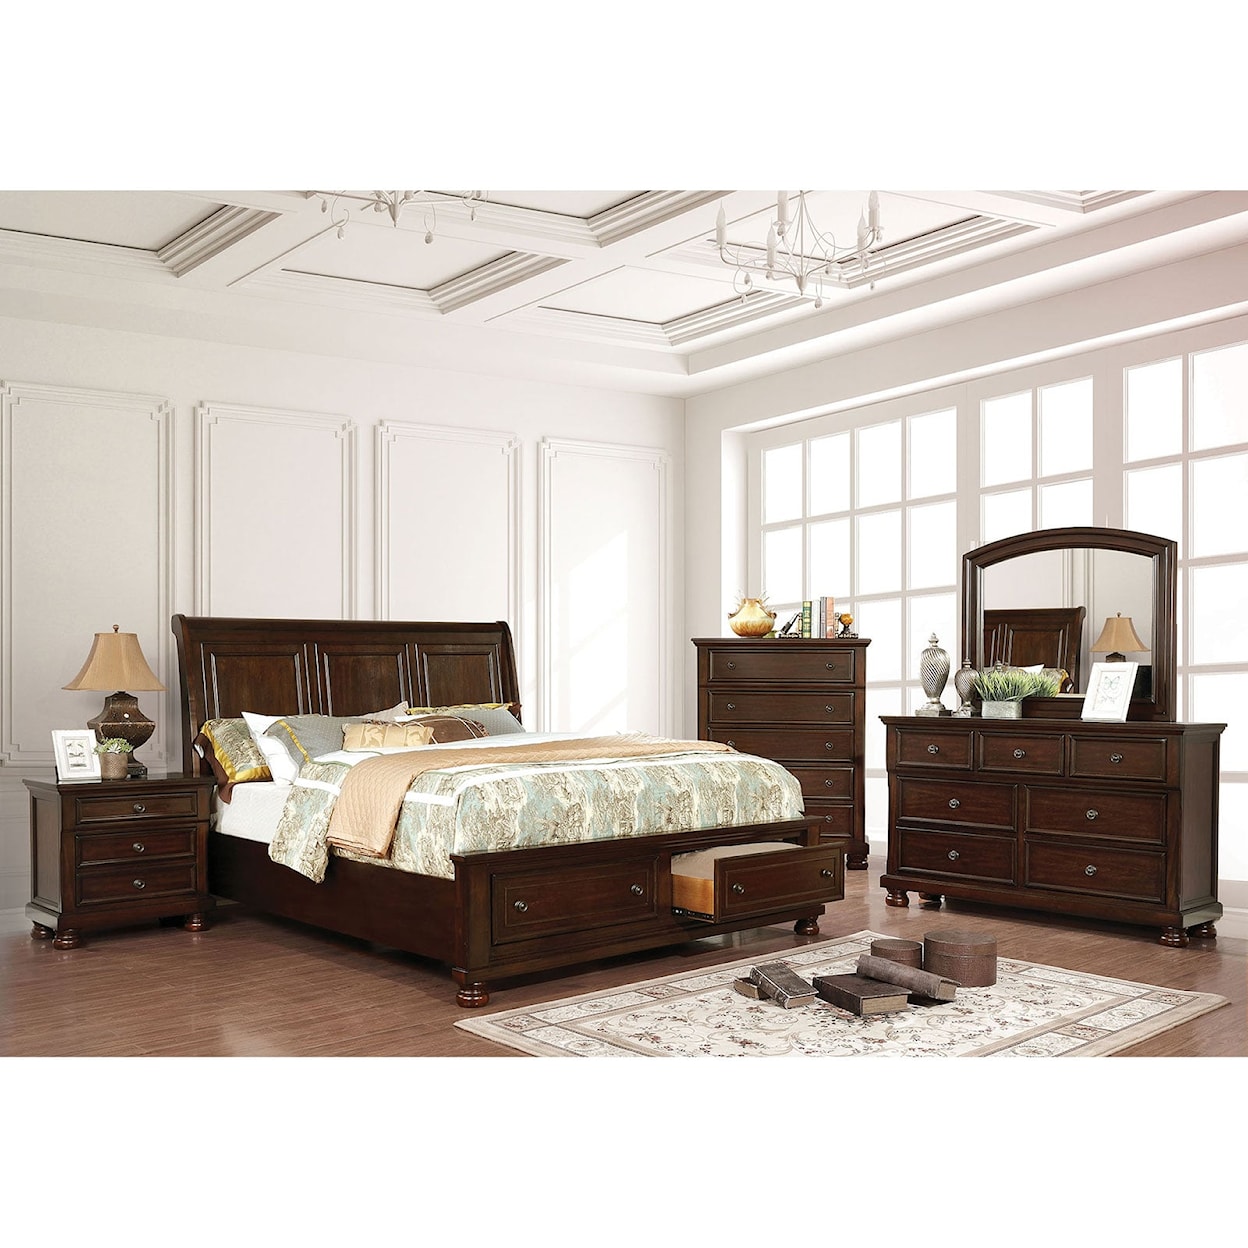 Furniture of America Castor 5 Pc. Queen Bedroom Set w/ 2NS